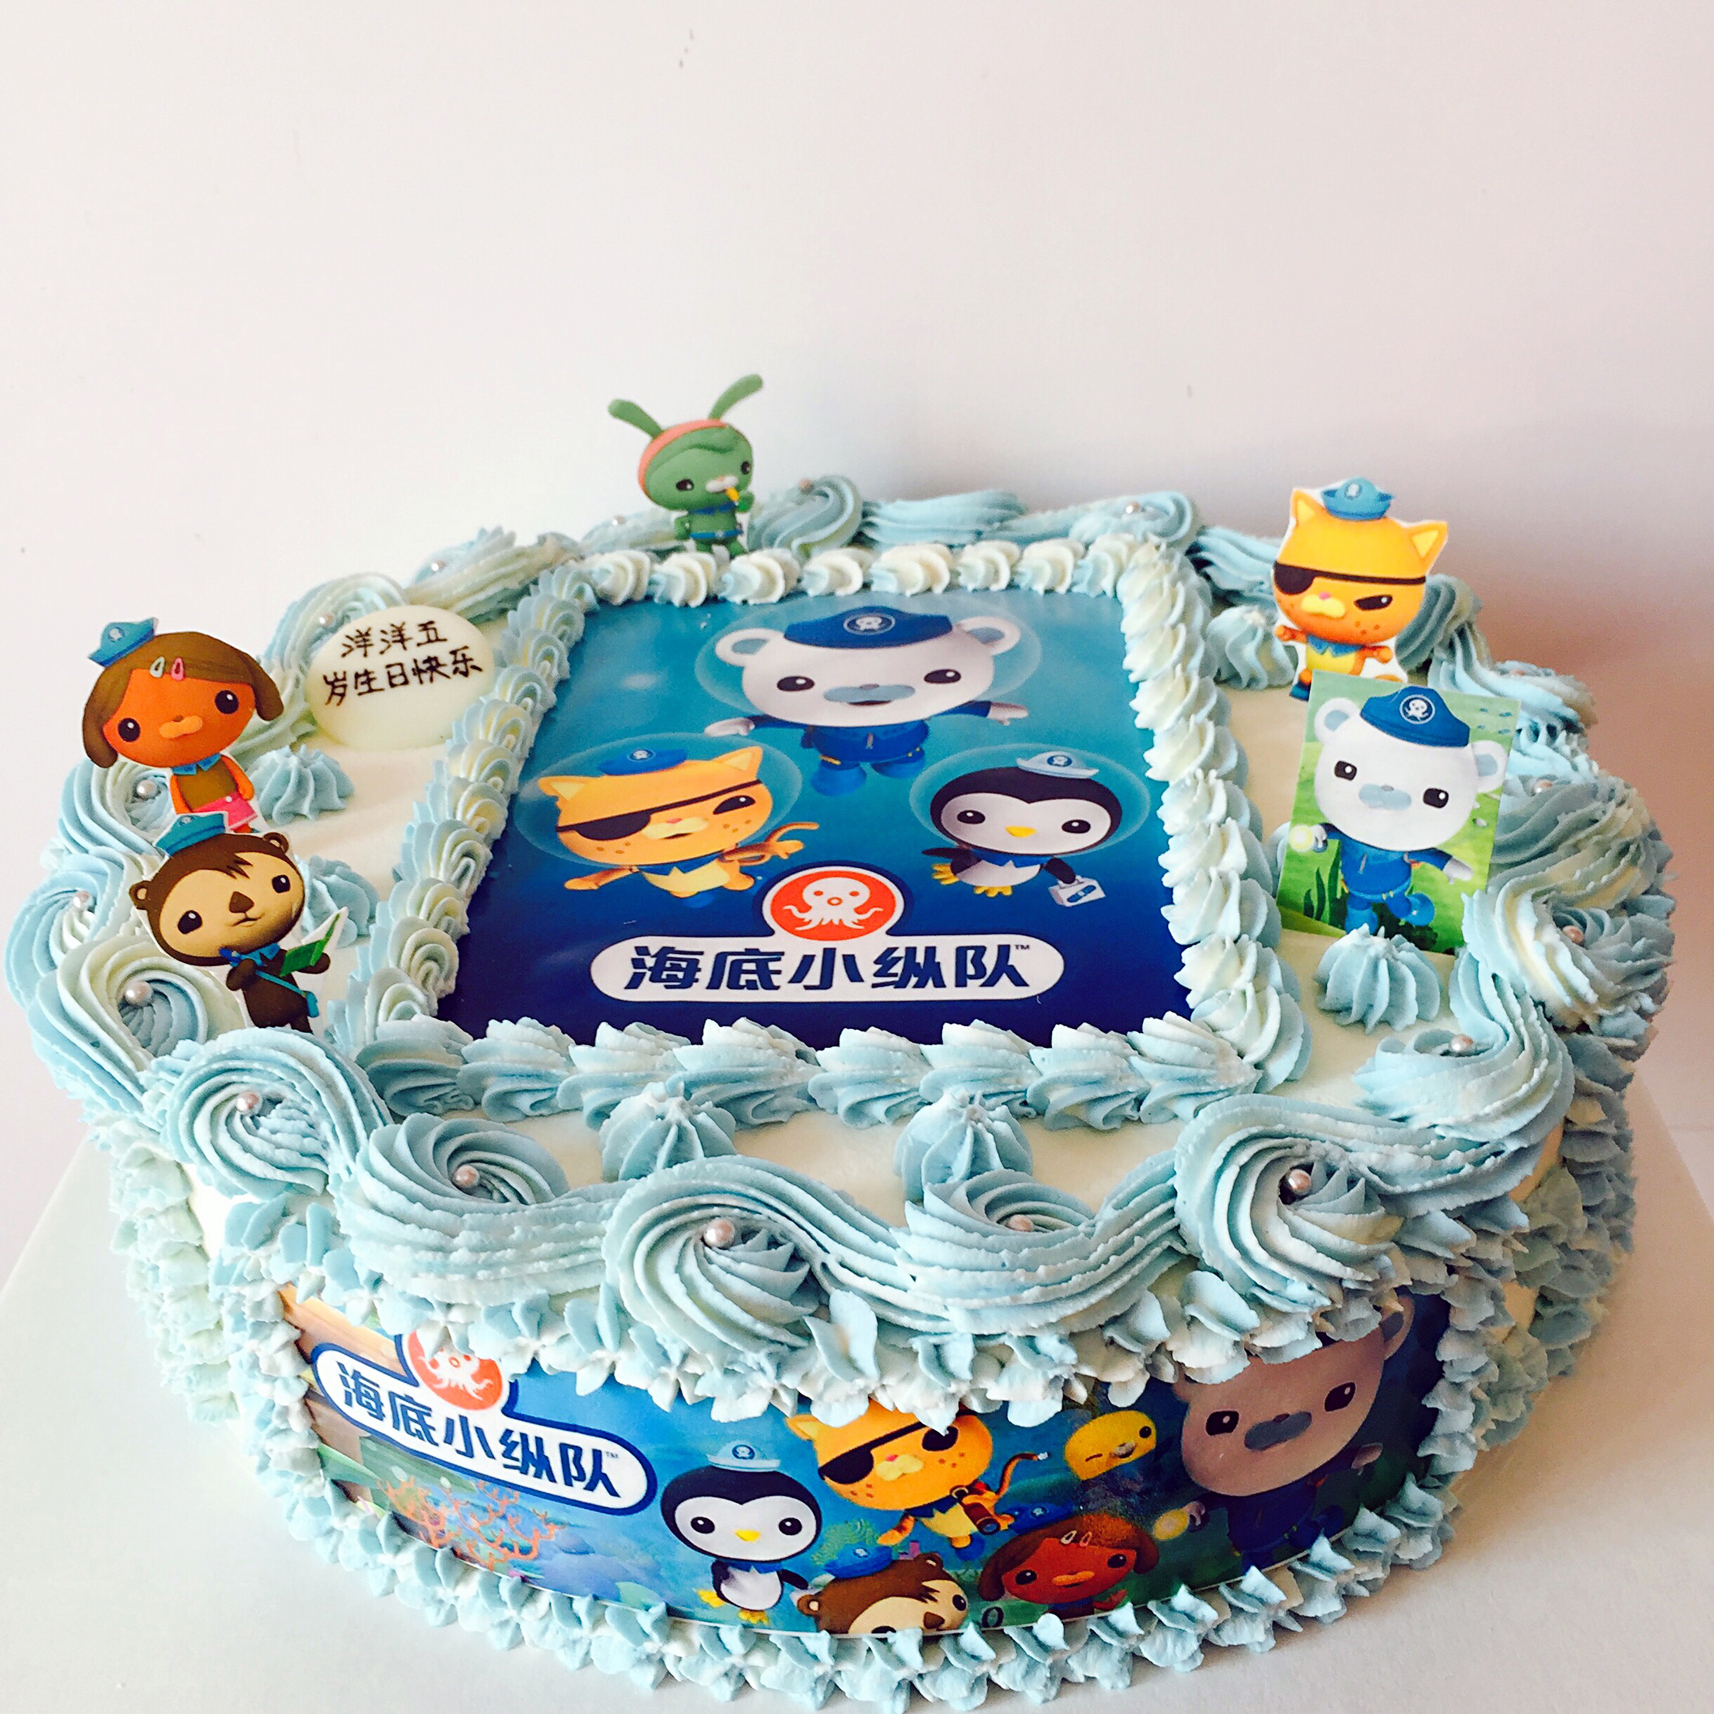 【海底小纵队】生日蛋糕 数码蛋糕 海底小纵队主题蛋糕 广州同城